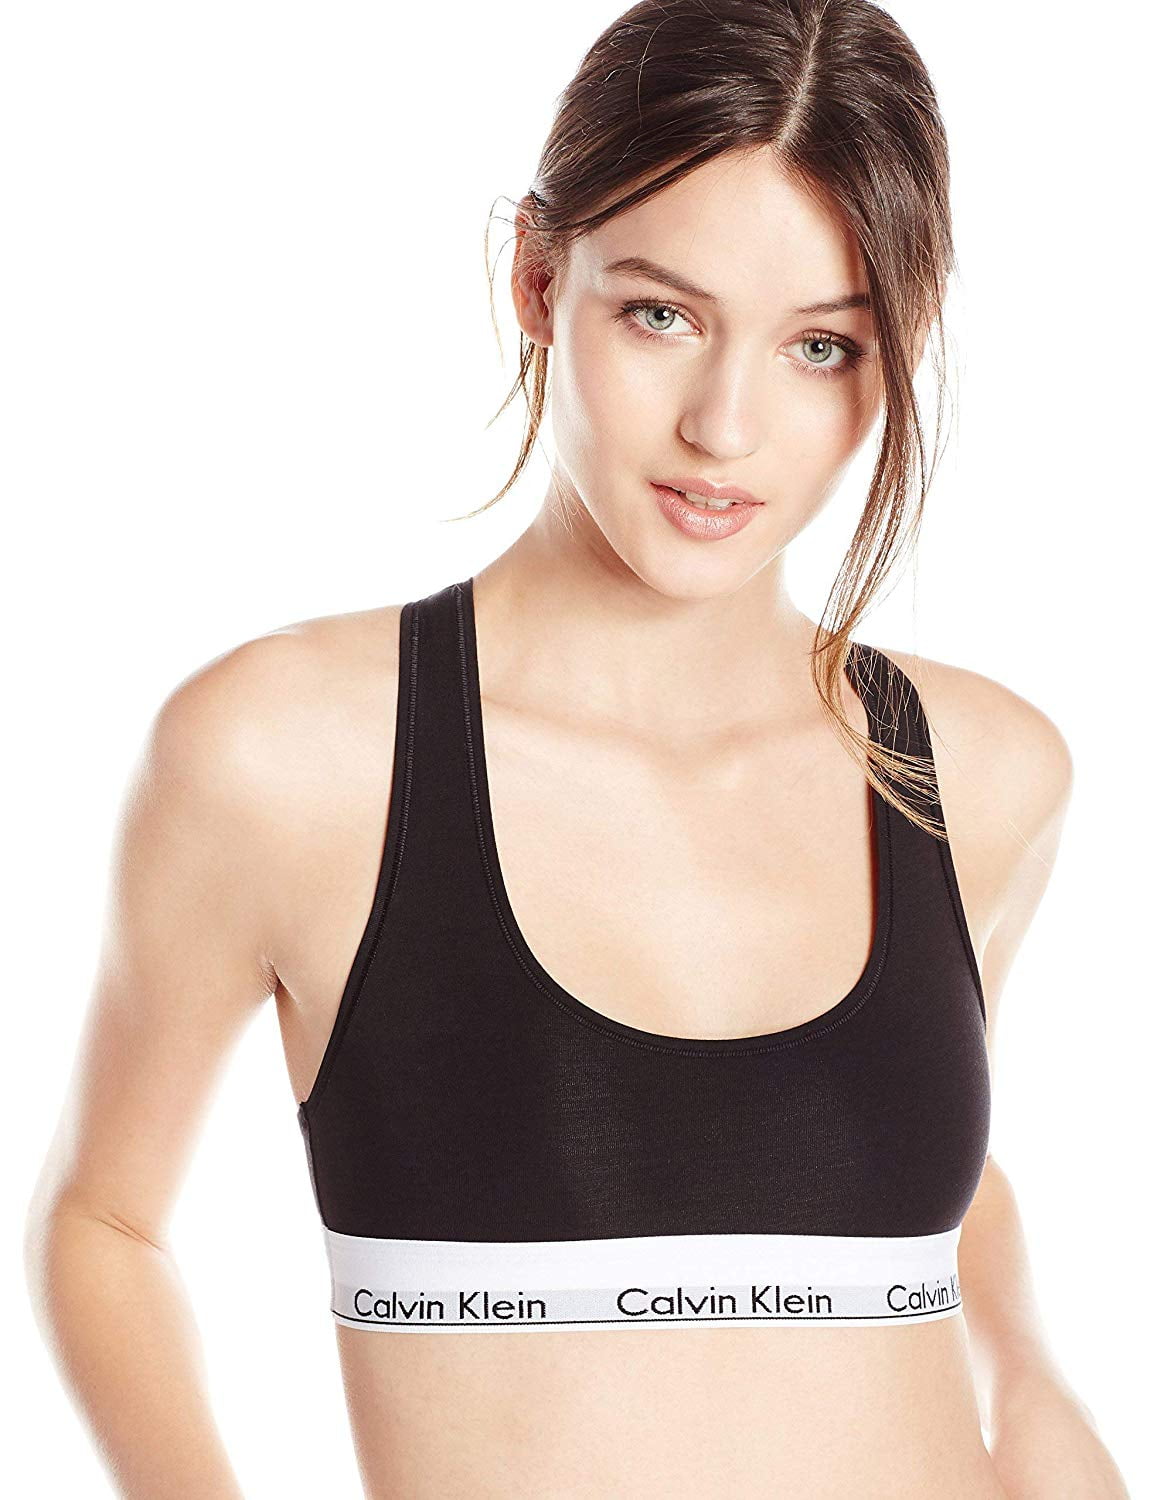 Calvin Klein Women's Modern Cotton Bralette, Grey Heather, Medium 